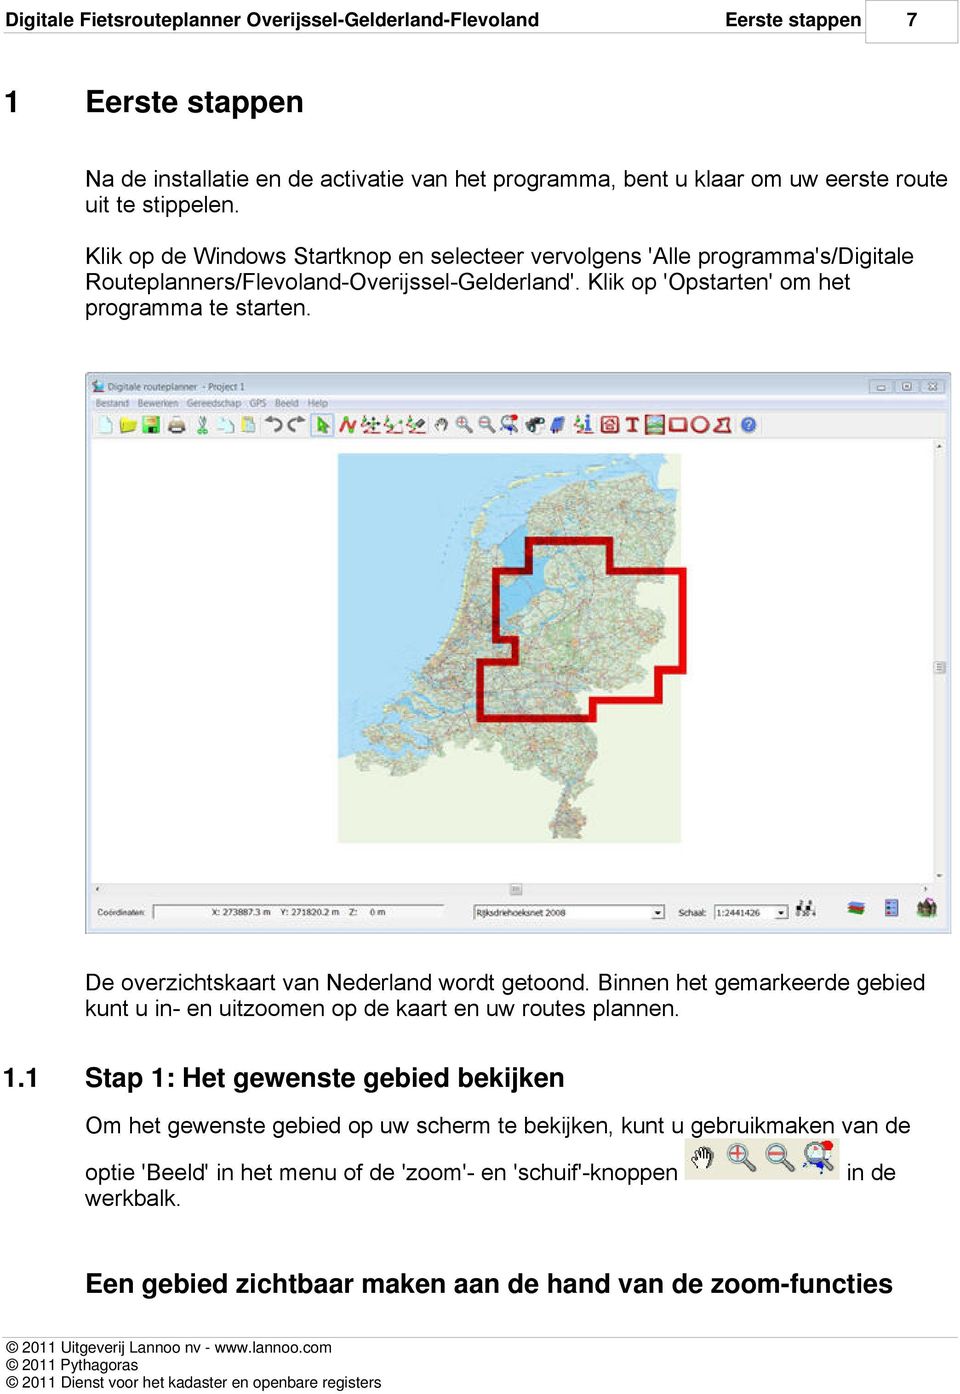 De overzichtskaart van Nederland wordt getoond. Binnen het gemarkeerde gebied kunt u in- en uitzoomen op de kaart en uw routes plannen. 1.